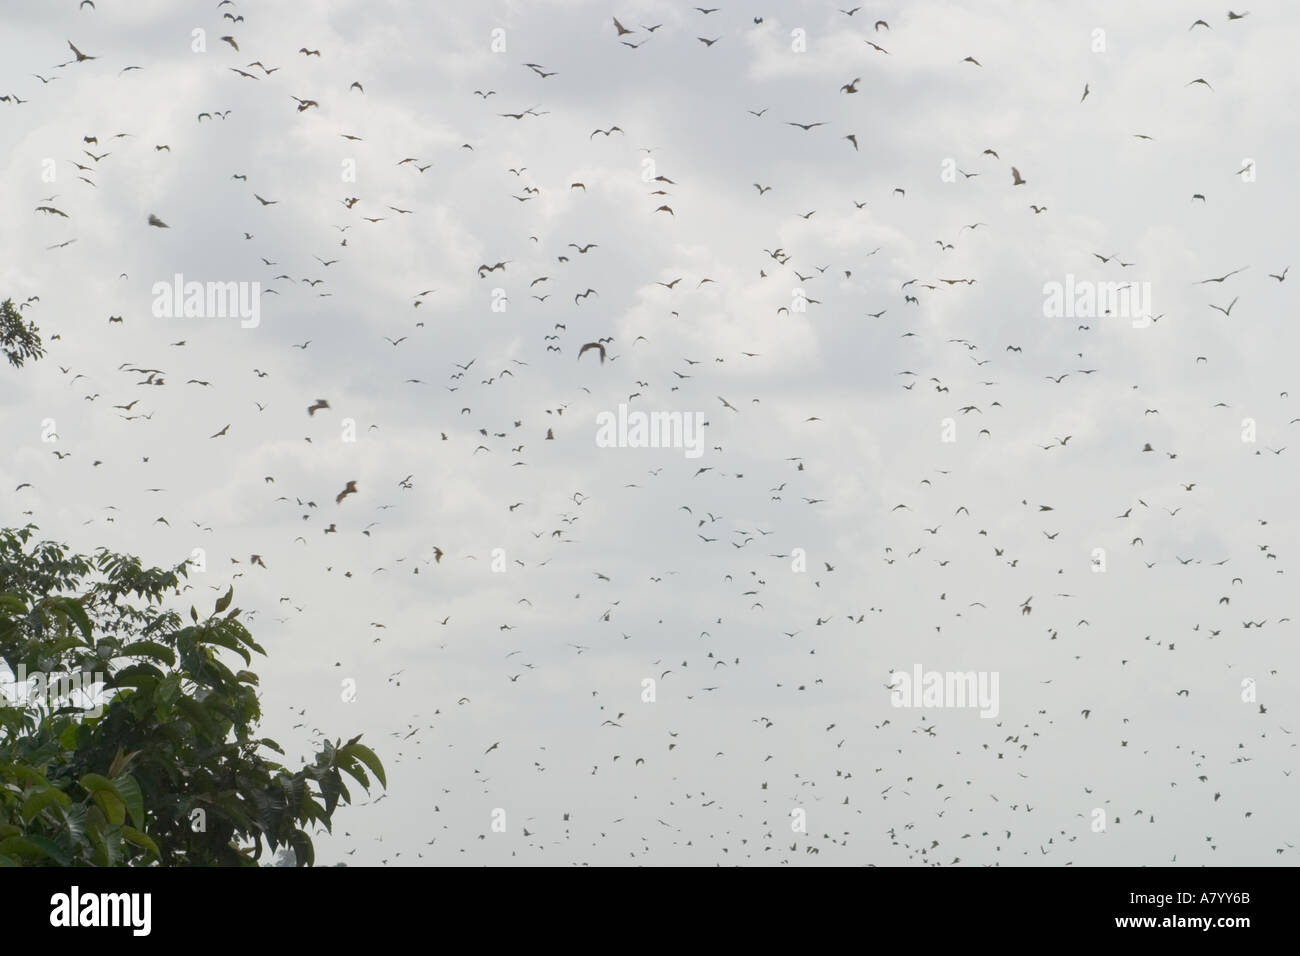 Paglia colorata pipistrelli della frutta o flying fox, tornando a casa a roost per appendere sospesa a testa in giù nella sommità di alti alberi nella foresta pluviale, Africa Occidentale, Ghana Foto Stock